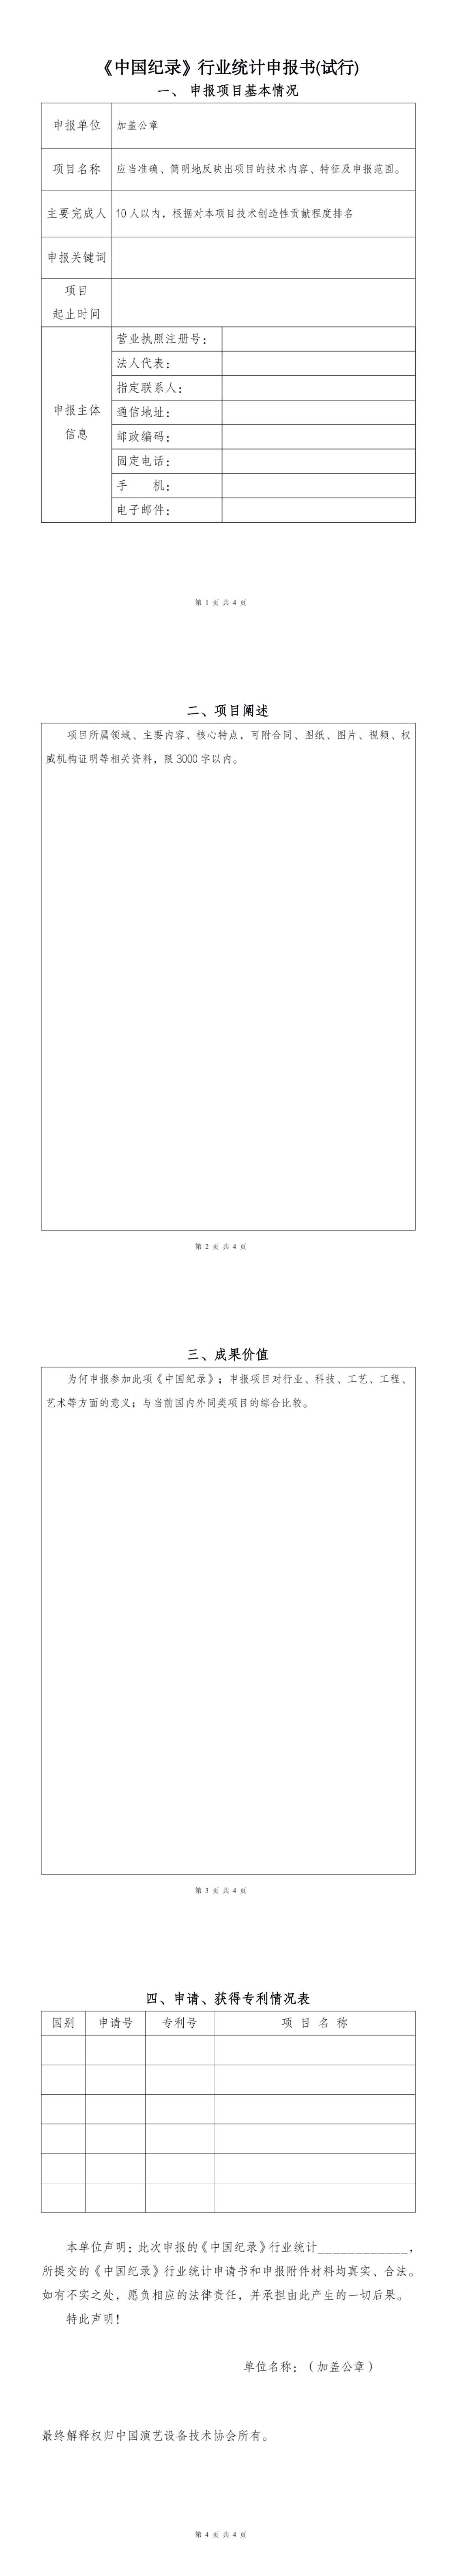 附件2：《中国纪录》行业统计申报书(试行)2022.6.8-网页修改版.png